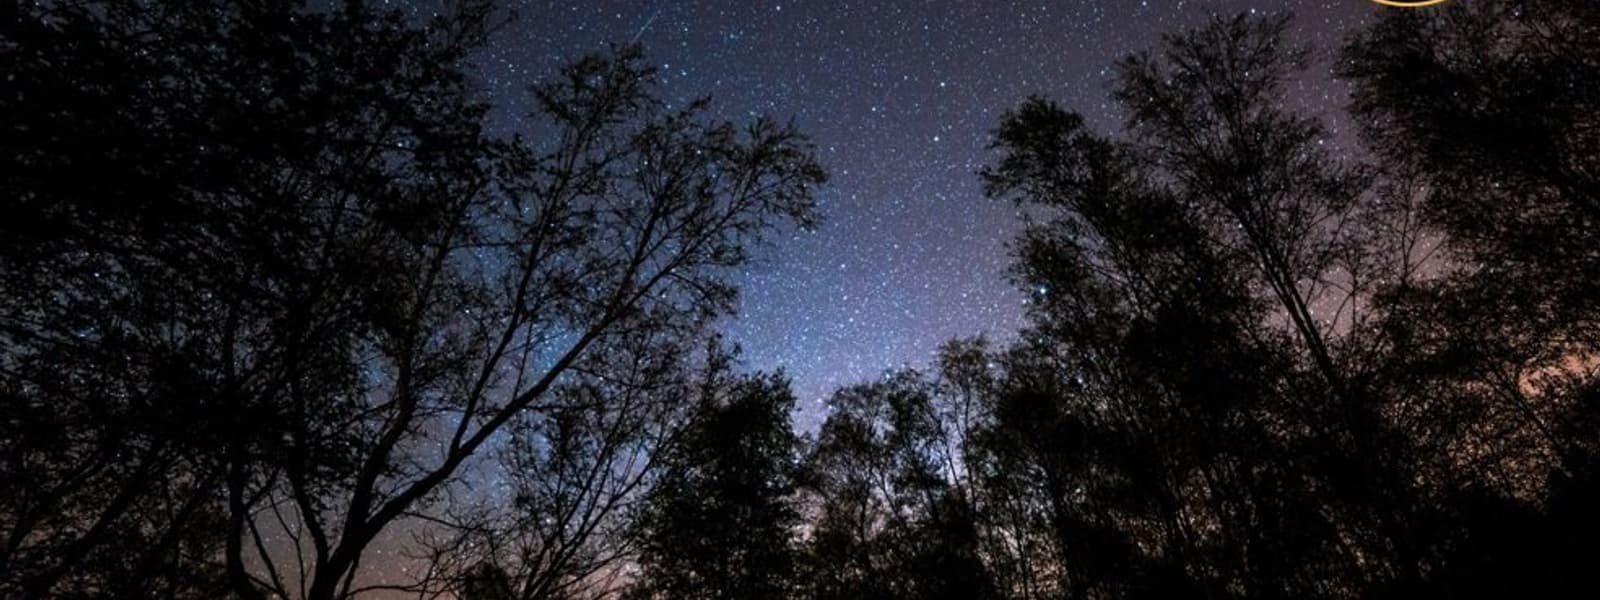 Forest of Bowland - Dark Sky Site (c) Matthew Savage